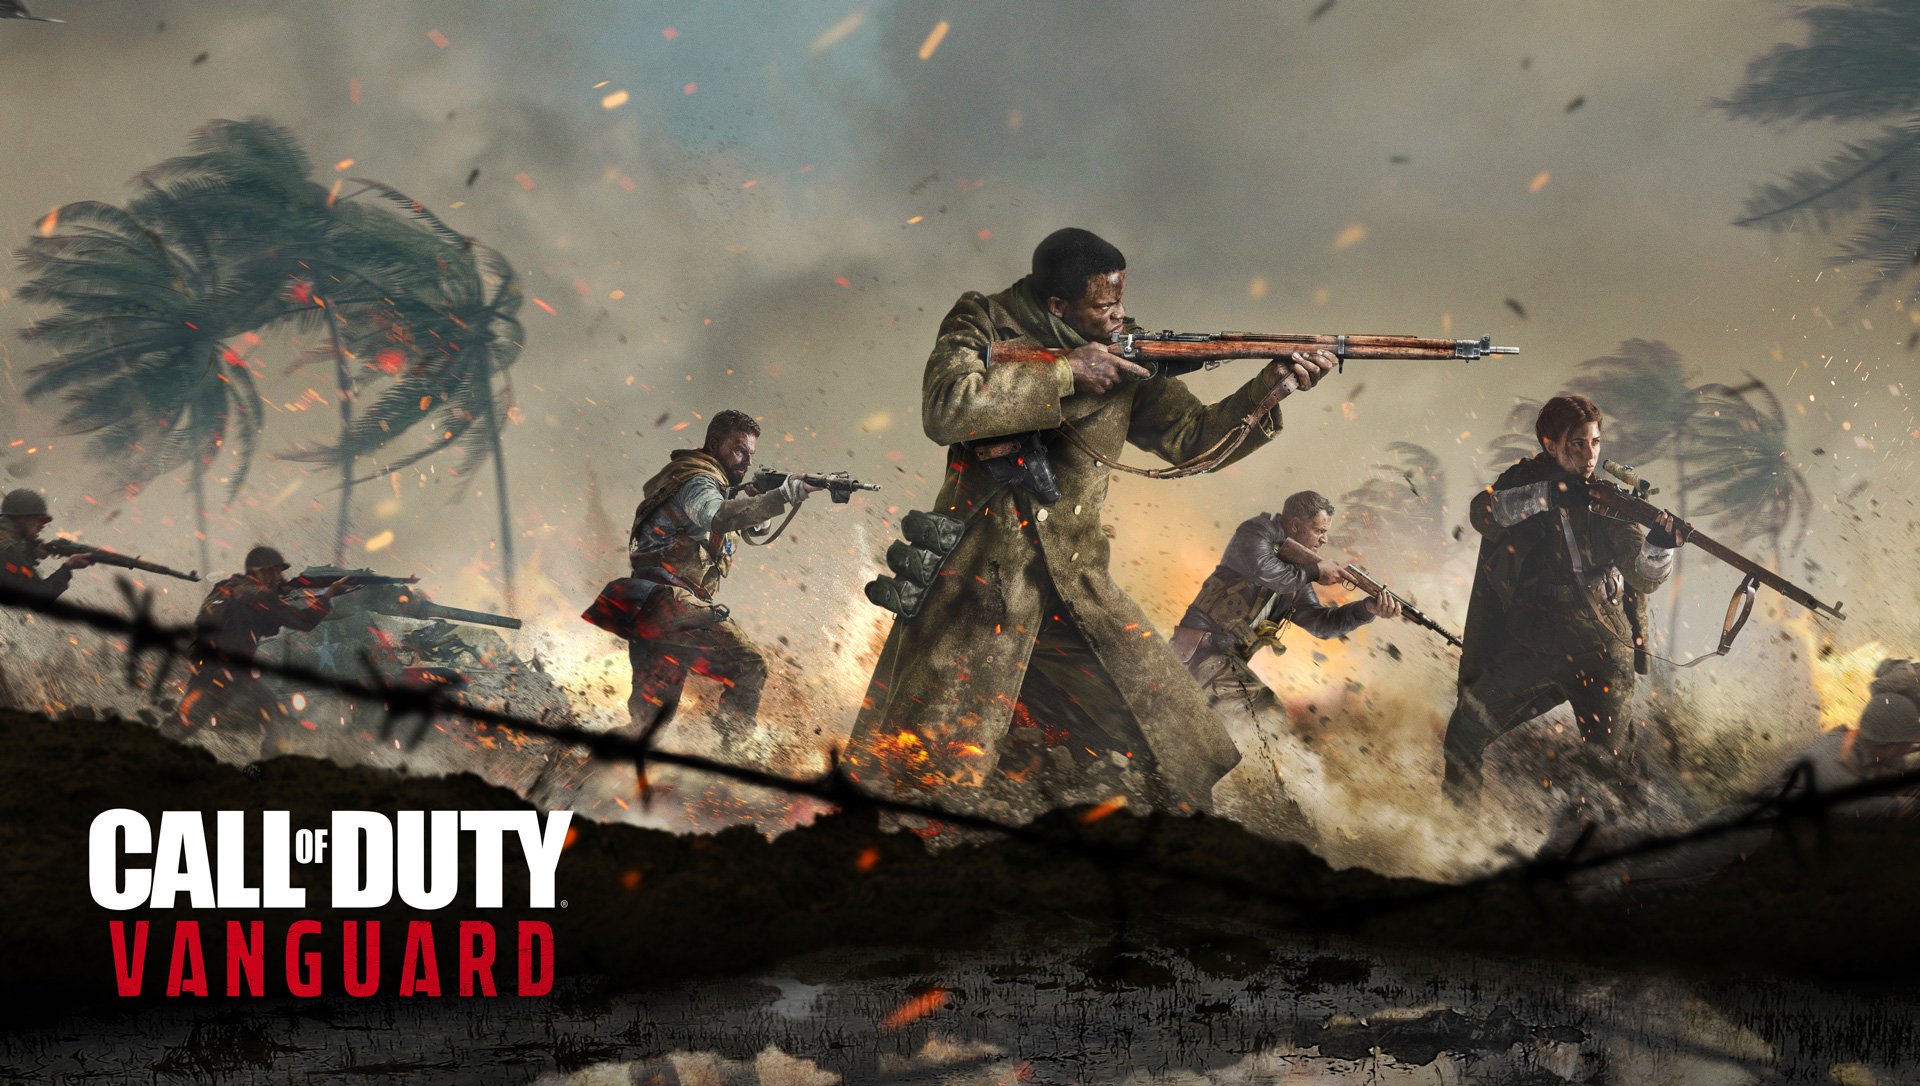 Το Call of Duty: Vanguard επιστρέφει τη σειρά στον 2ο Παγκόσμιο Πόλεμο